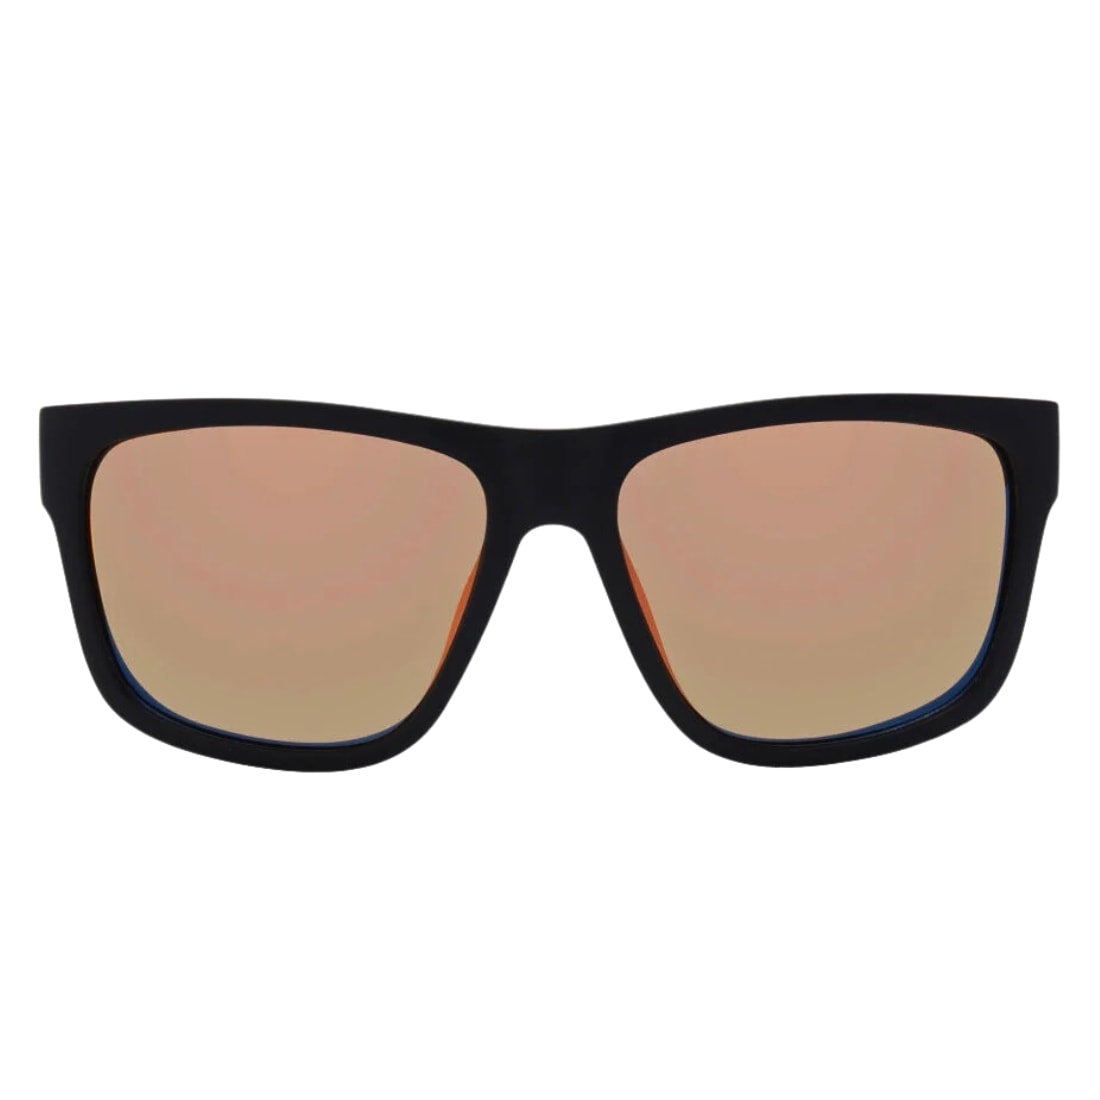 I-Sea Dalton Polarised Sunglasses - Black/Rose Polarized - Square/Rectangular Sunglasses by I-Sea